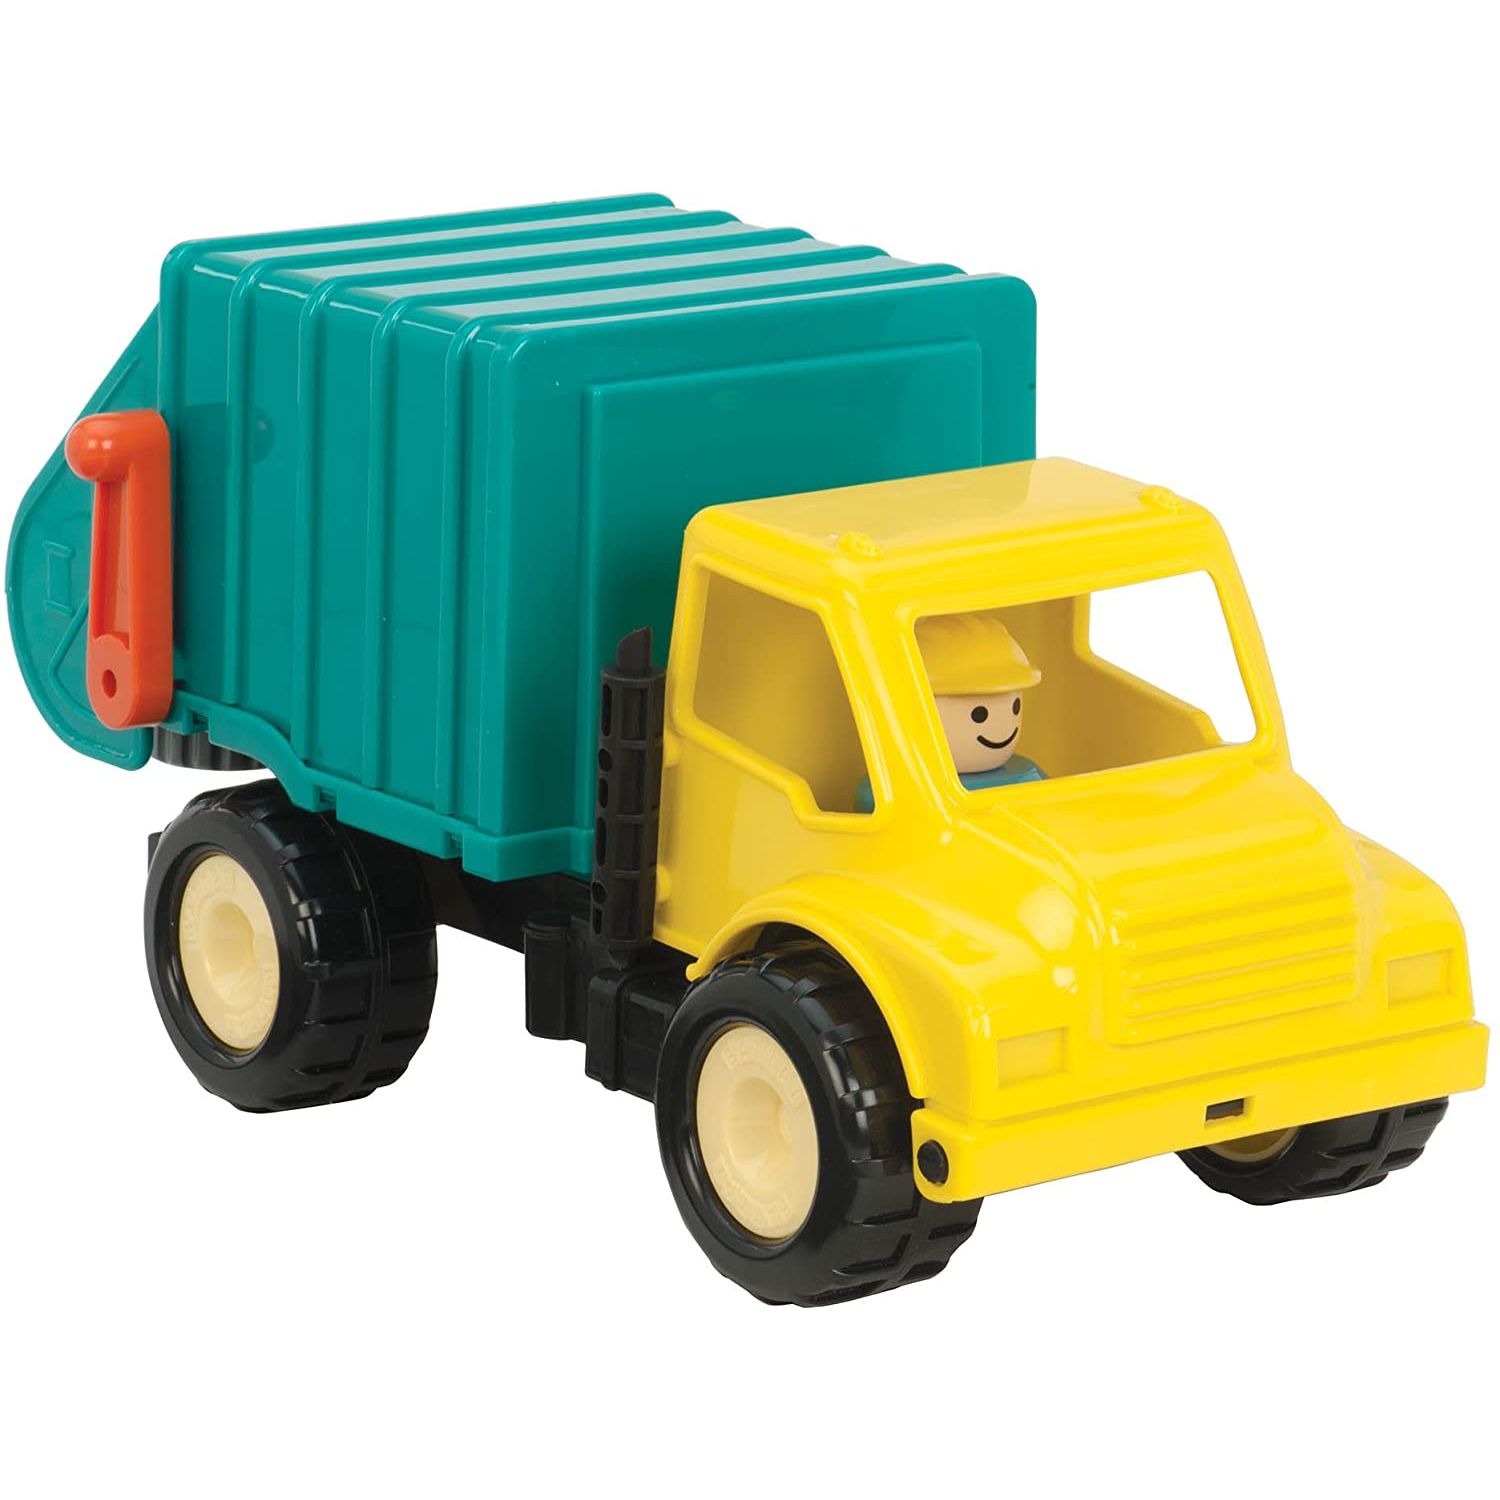 battat garbage truck toy